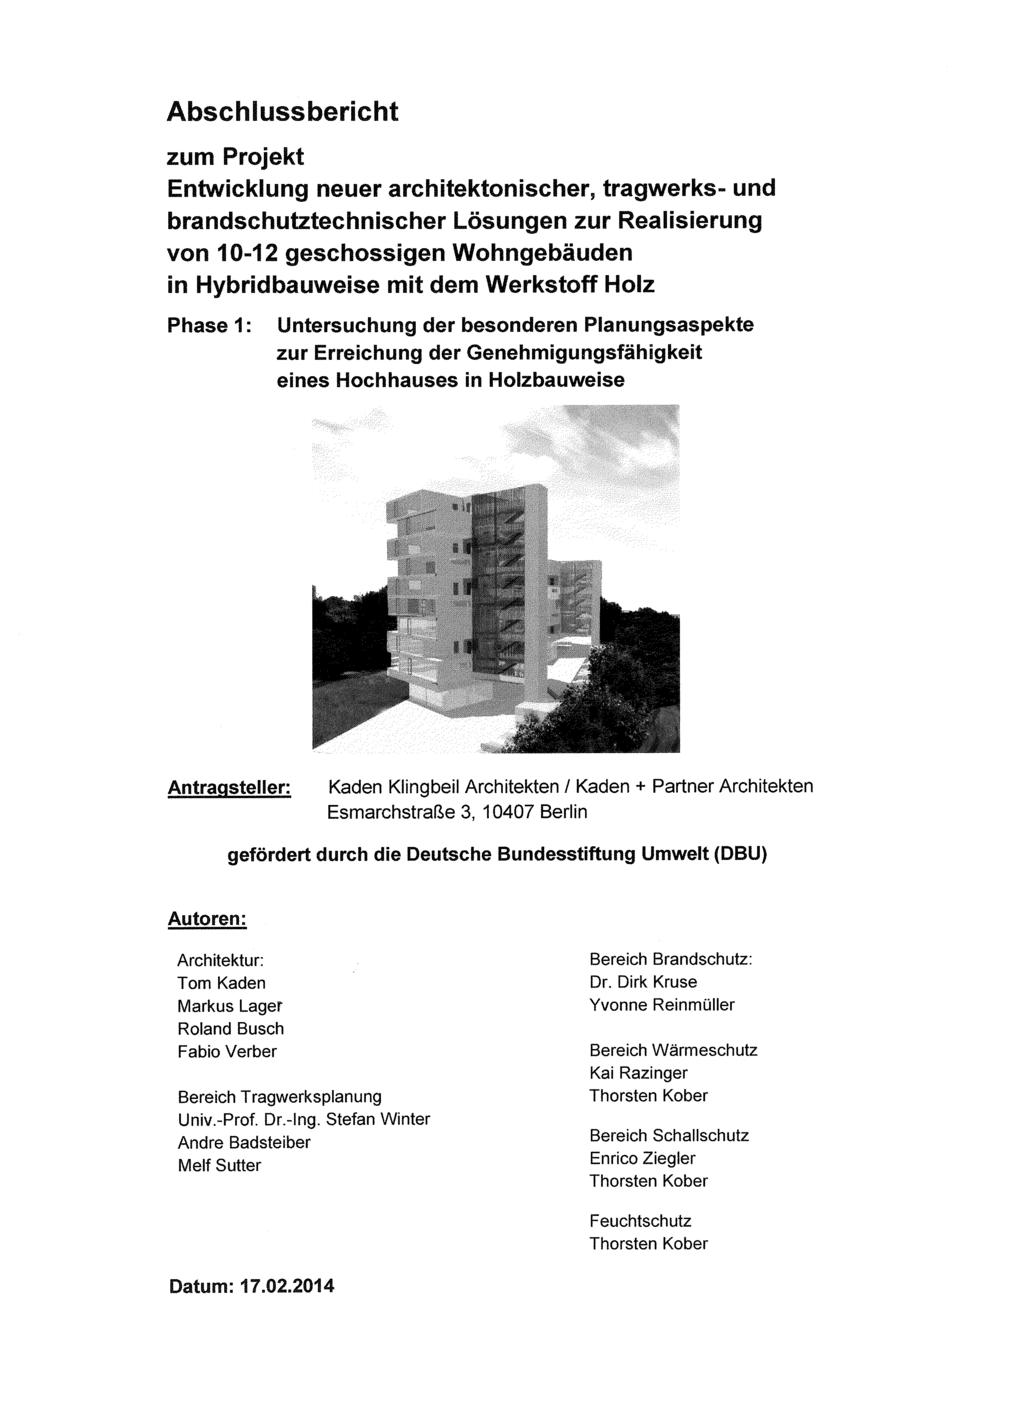 Abschlussbericht zum Projekt Entwicklung neuer architektonischer, tragwerks- und brandschutztechnischer Lösungen zur Realisierung von 10-12 geschossigen Wohngebäuden Phase 1: Untersuchung der